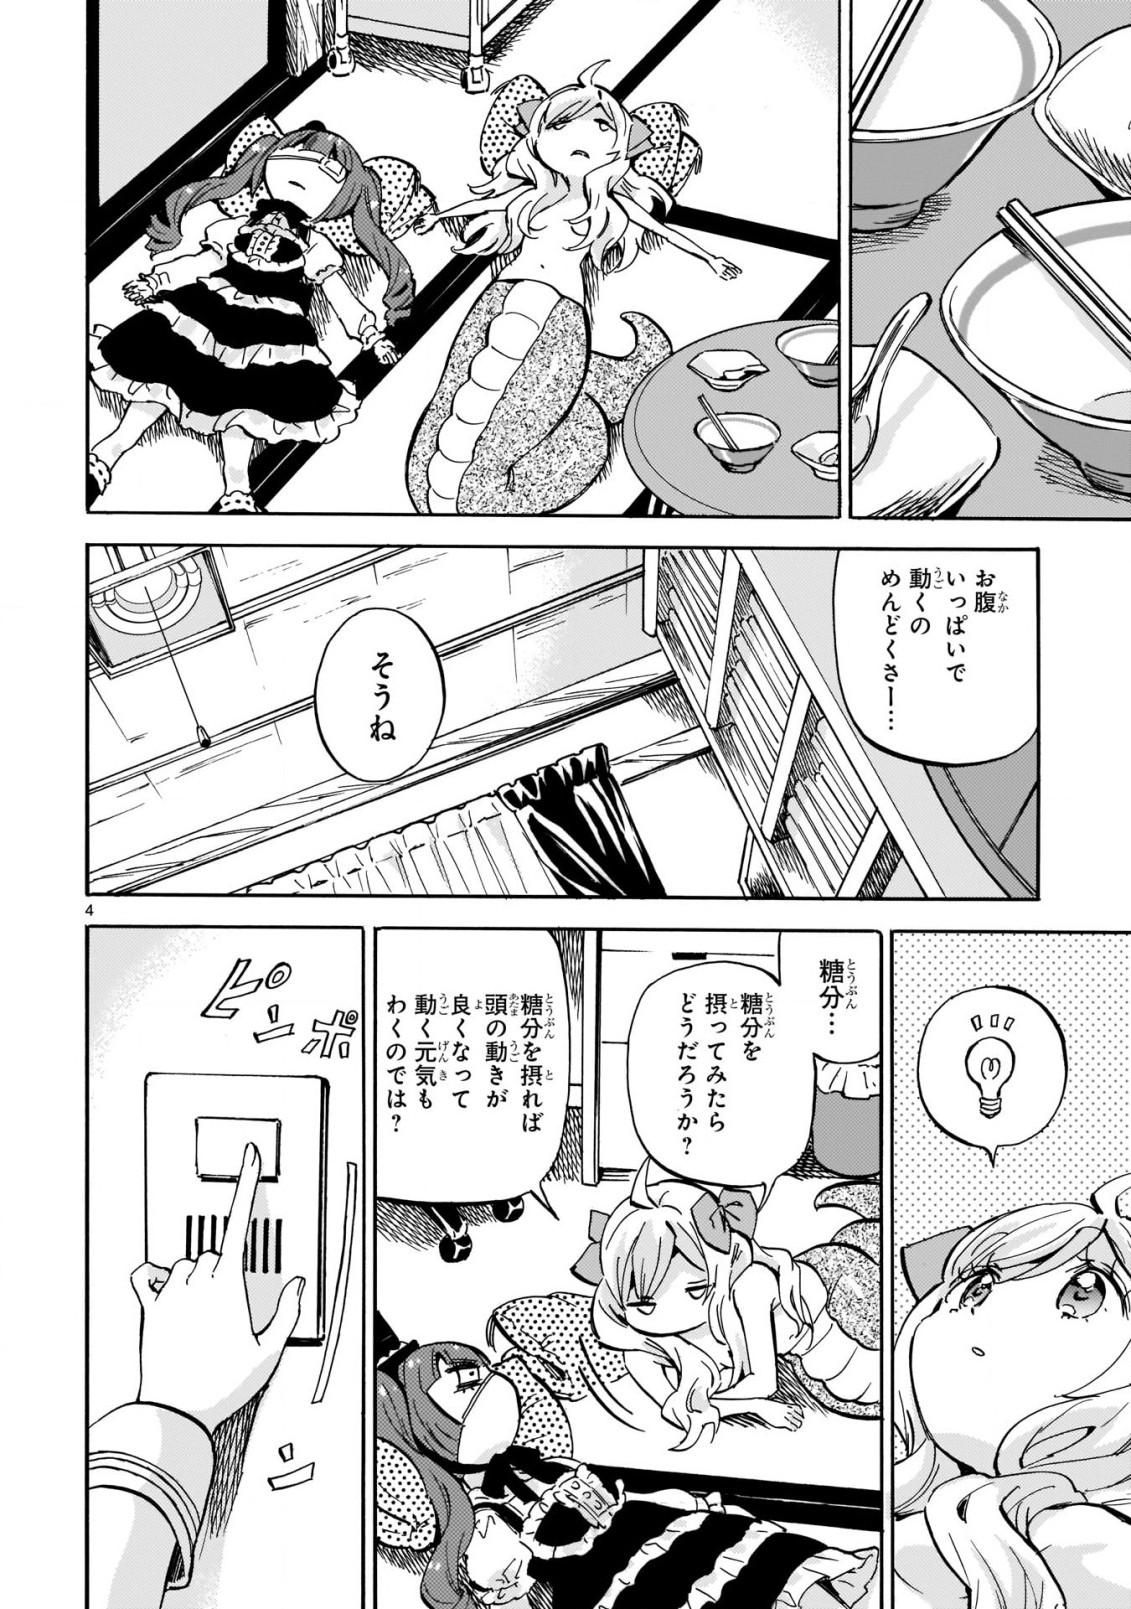 Jashin-chan Dropkick - Chapter 216 - Page 5